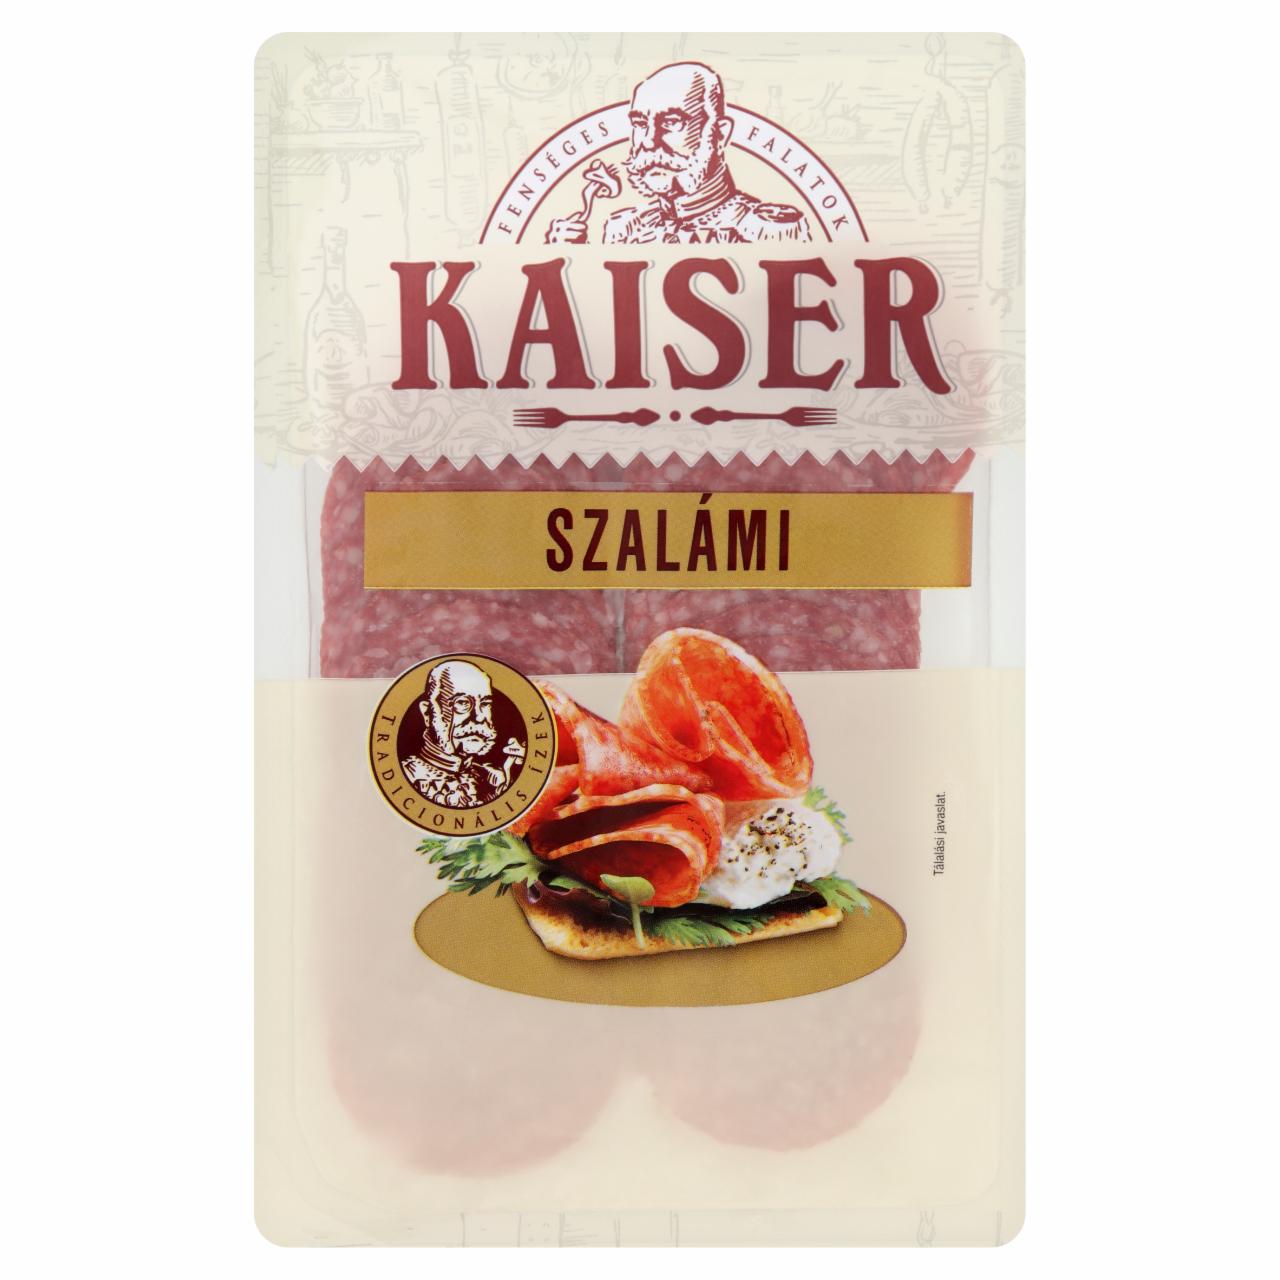 Képek - Kaiser csemege sertés szalámi 75 g